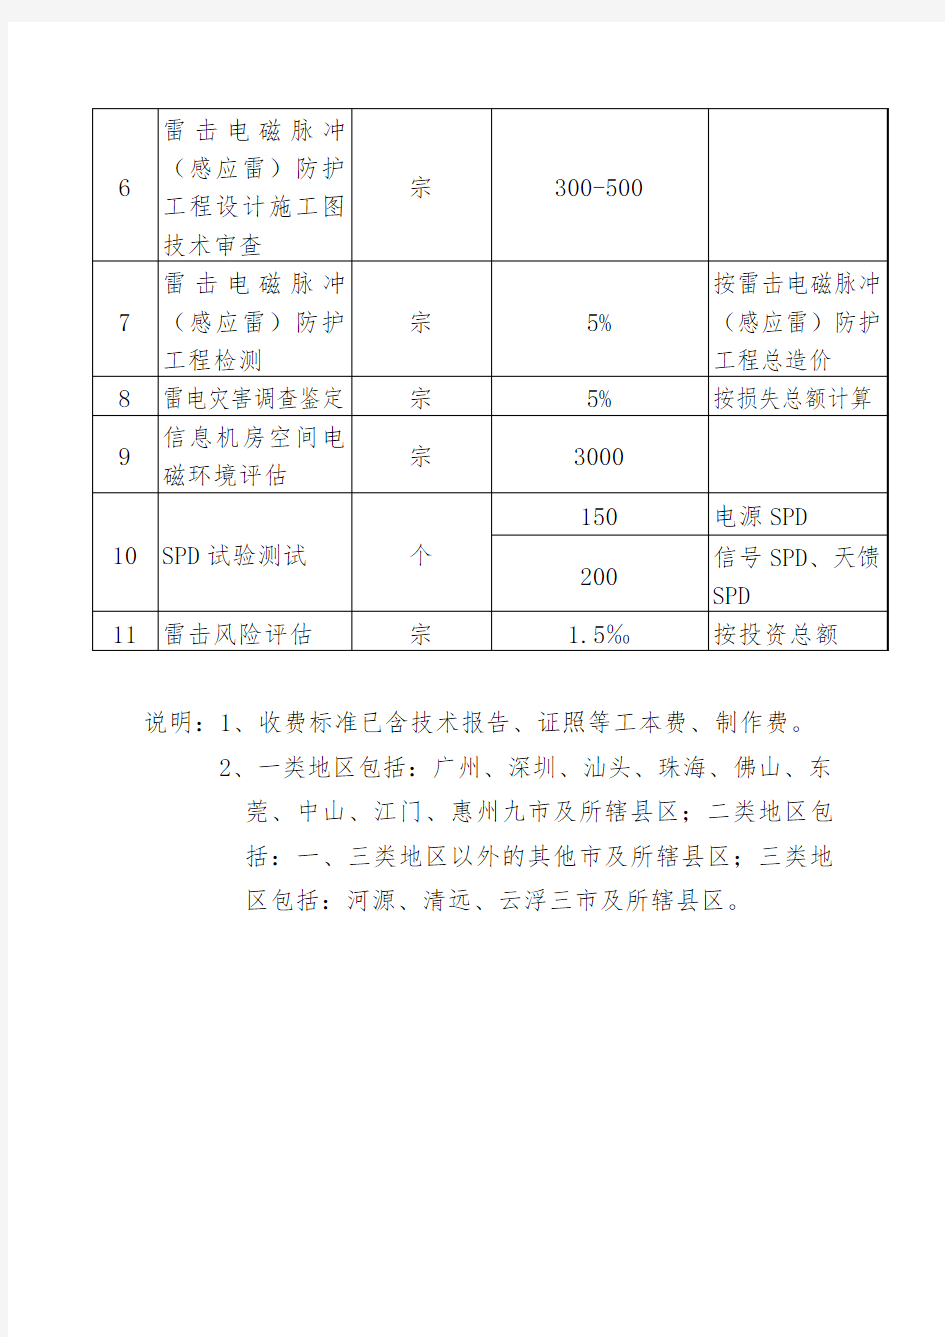 广东省防雷设施检测服务收费项目和收费标准表